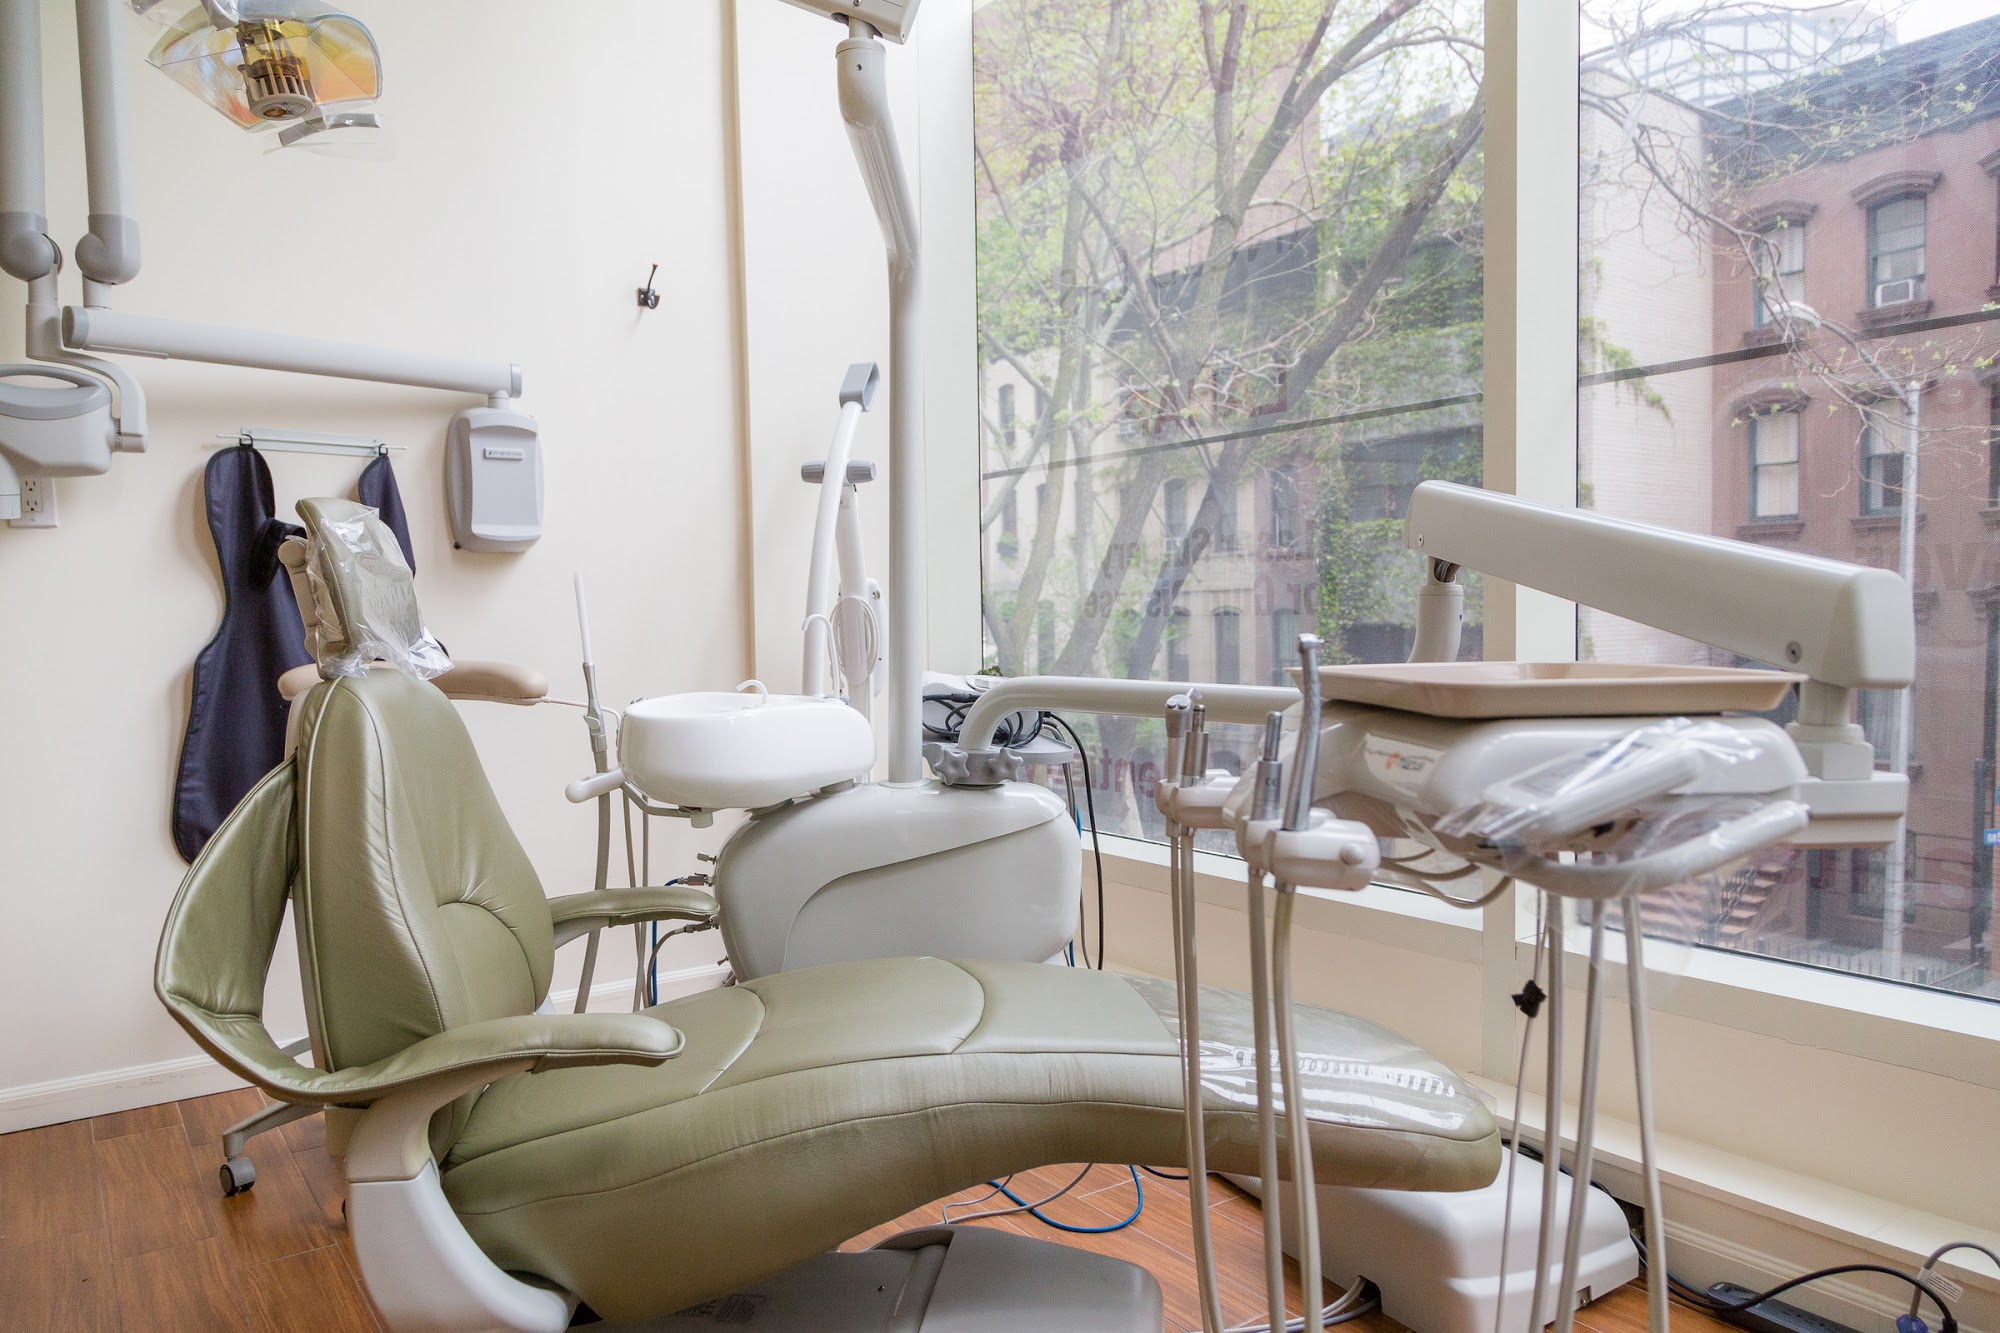 Gramercy Dental Studio